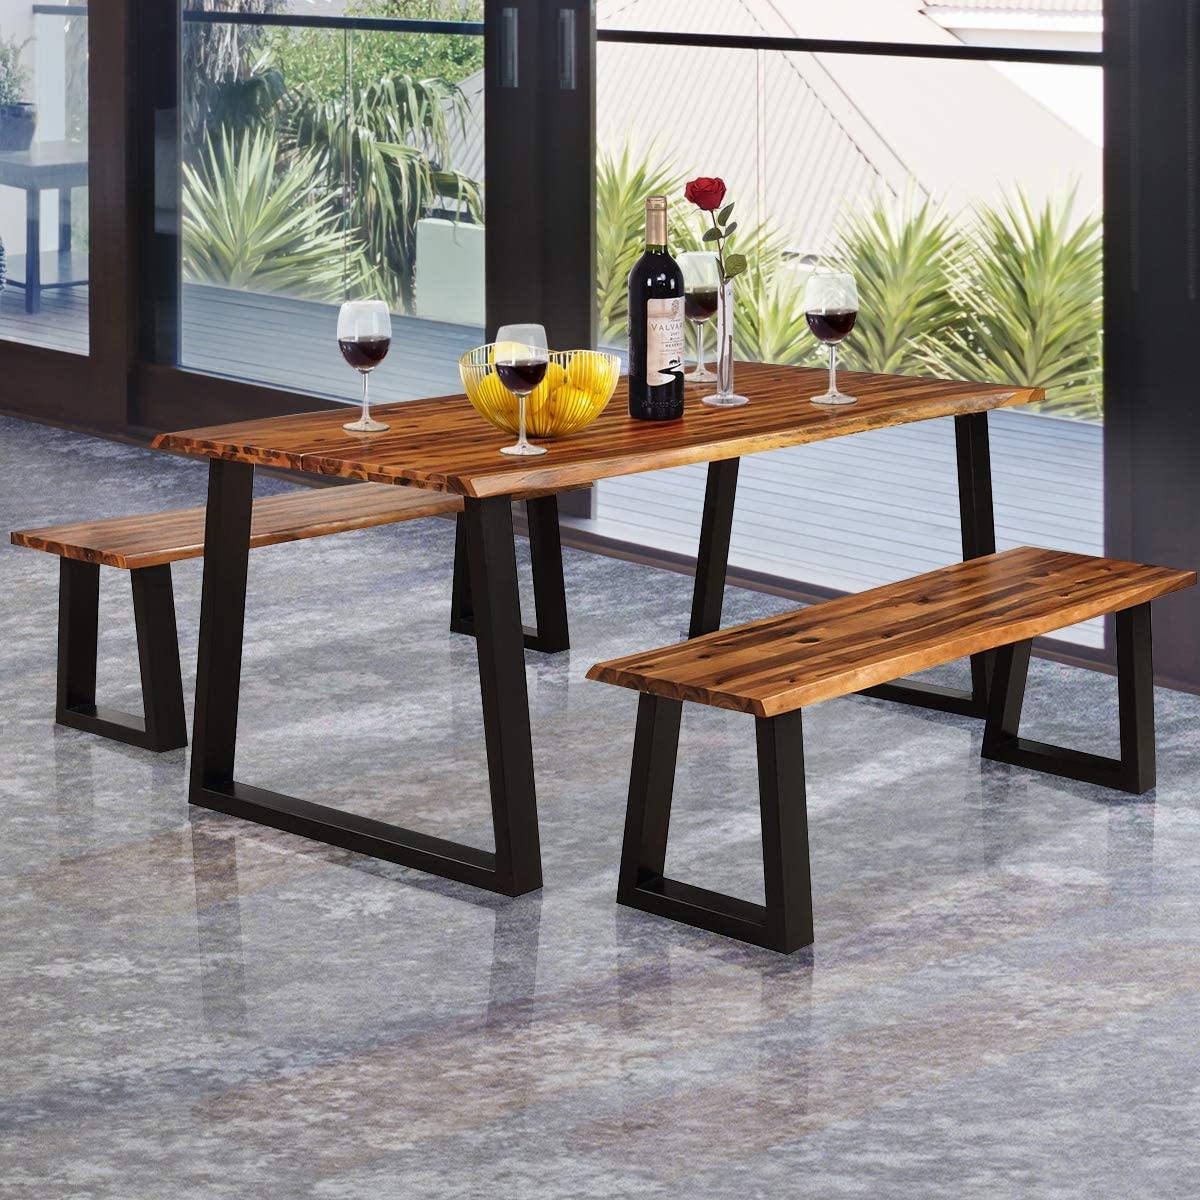 3PCS Wooden Dining Set Bench Chair Rustic Indoor &Outdoor Furniture - Giantexus